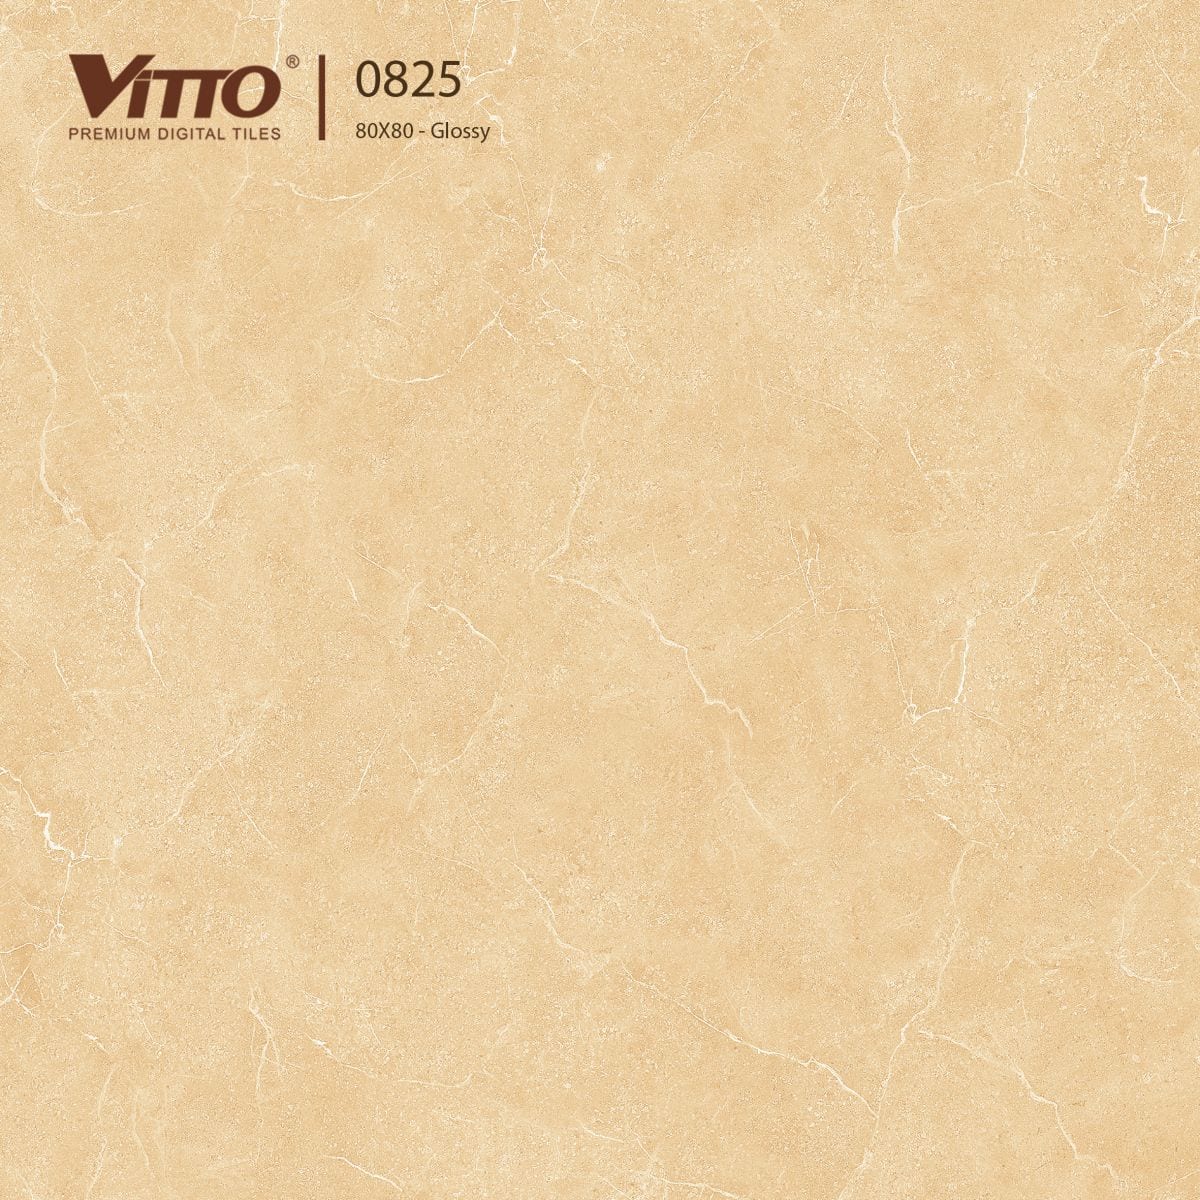 Gạch lát nền Vitto màu vàng: Với gạch lát nền Vitto màu vàng, không gian nhà bạn sẽ trở nên ấm áp và gần gũi hơn bao giờ hết. Sản phẩm chất lượng cao này giúp tạo nên một bề mặt đồng nhất và bền chắc.